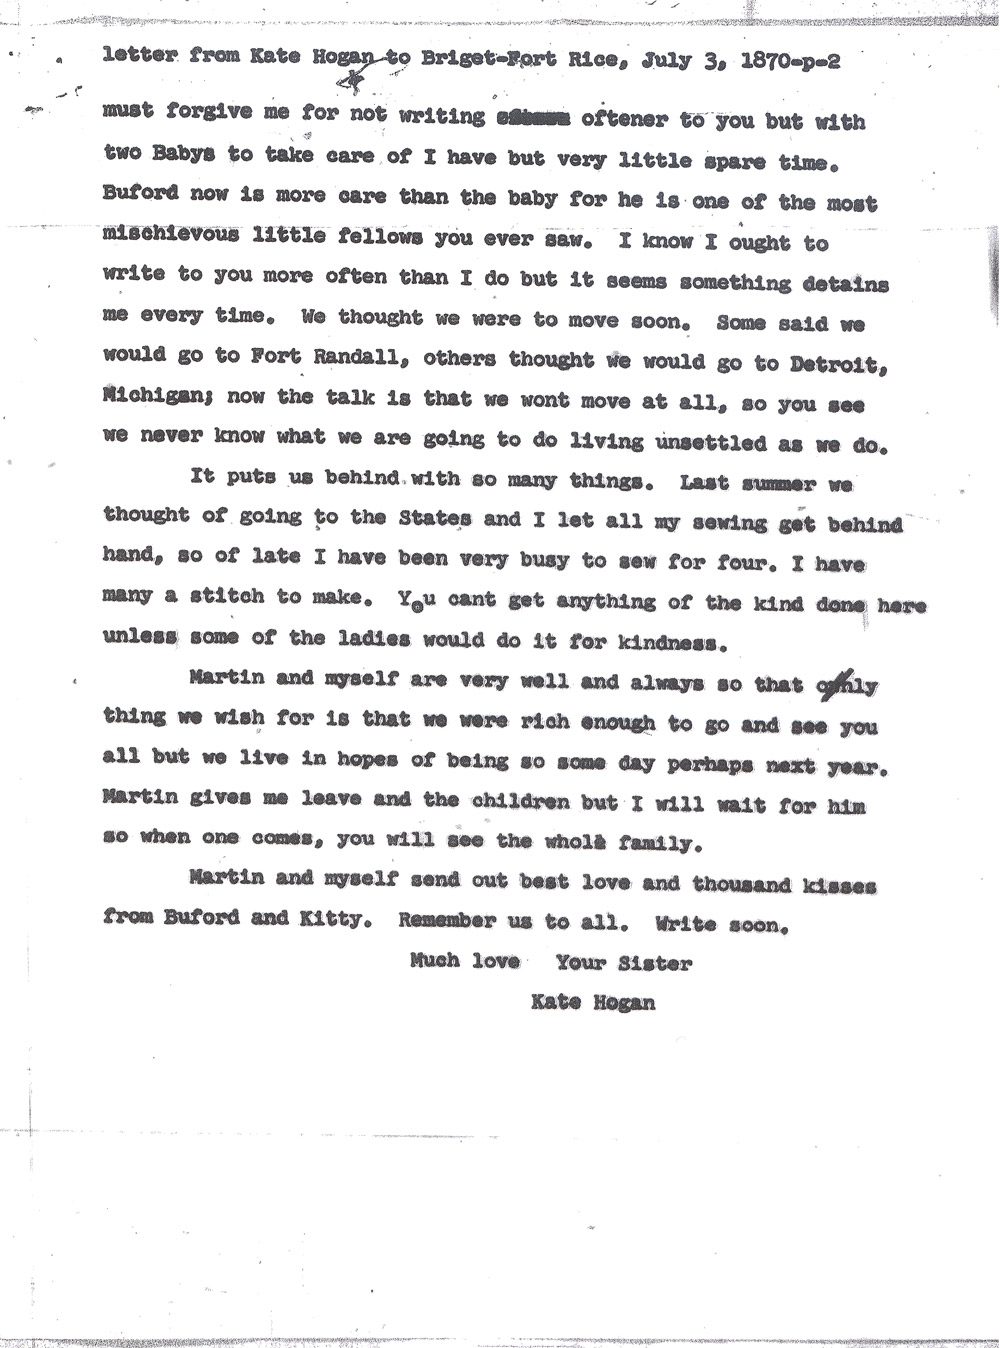 Kate Hogan Letter 2, Transcription, Page 2